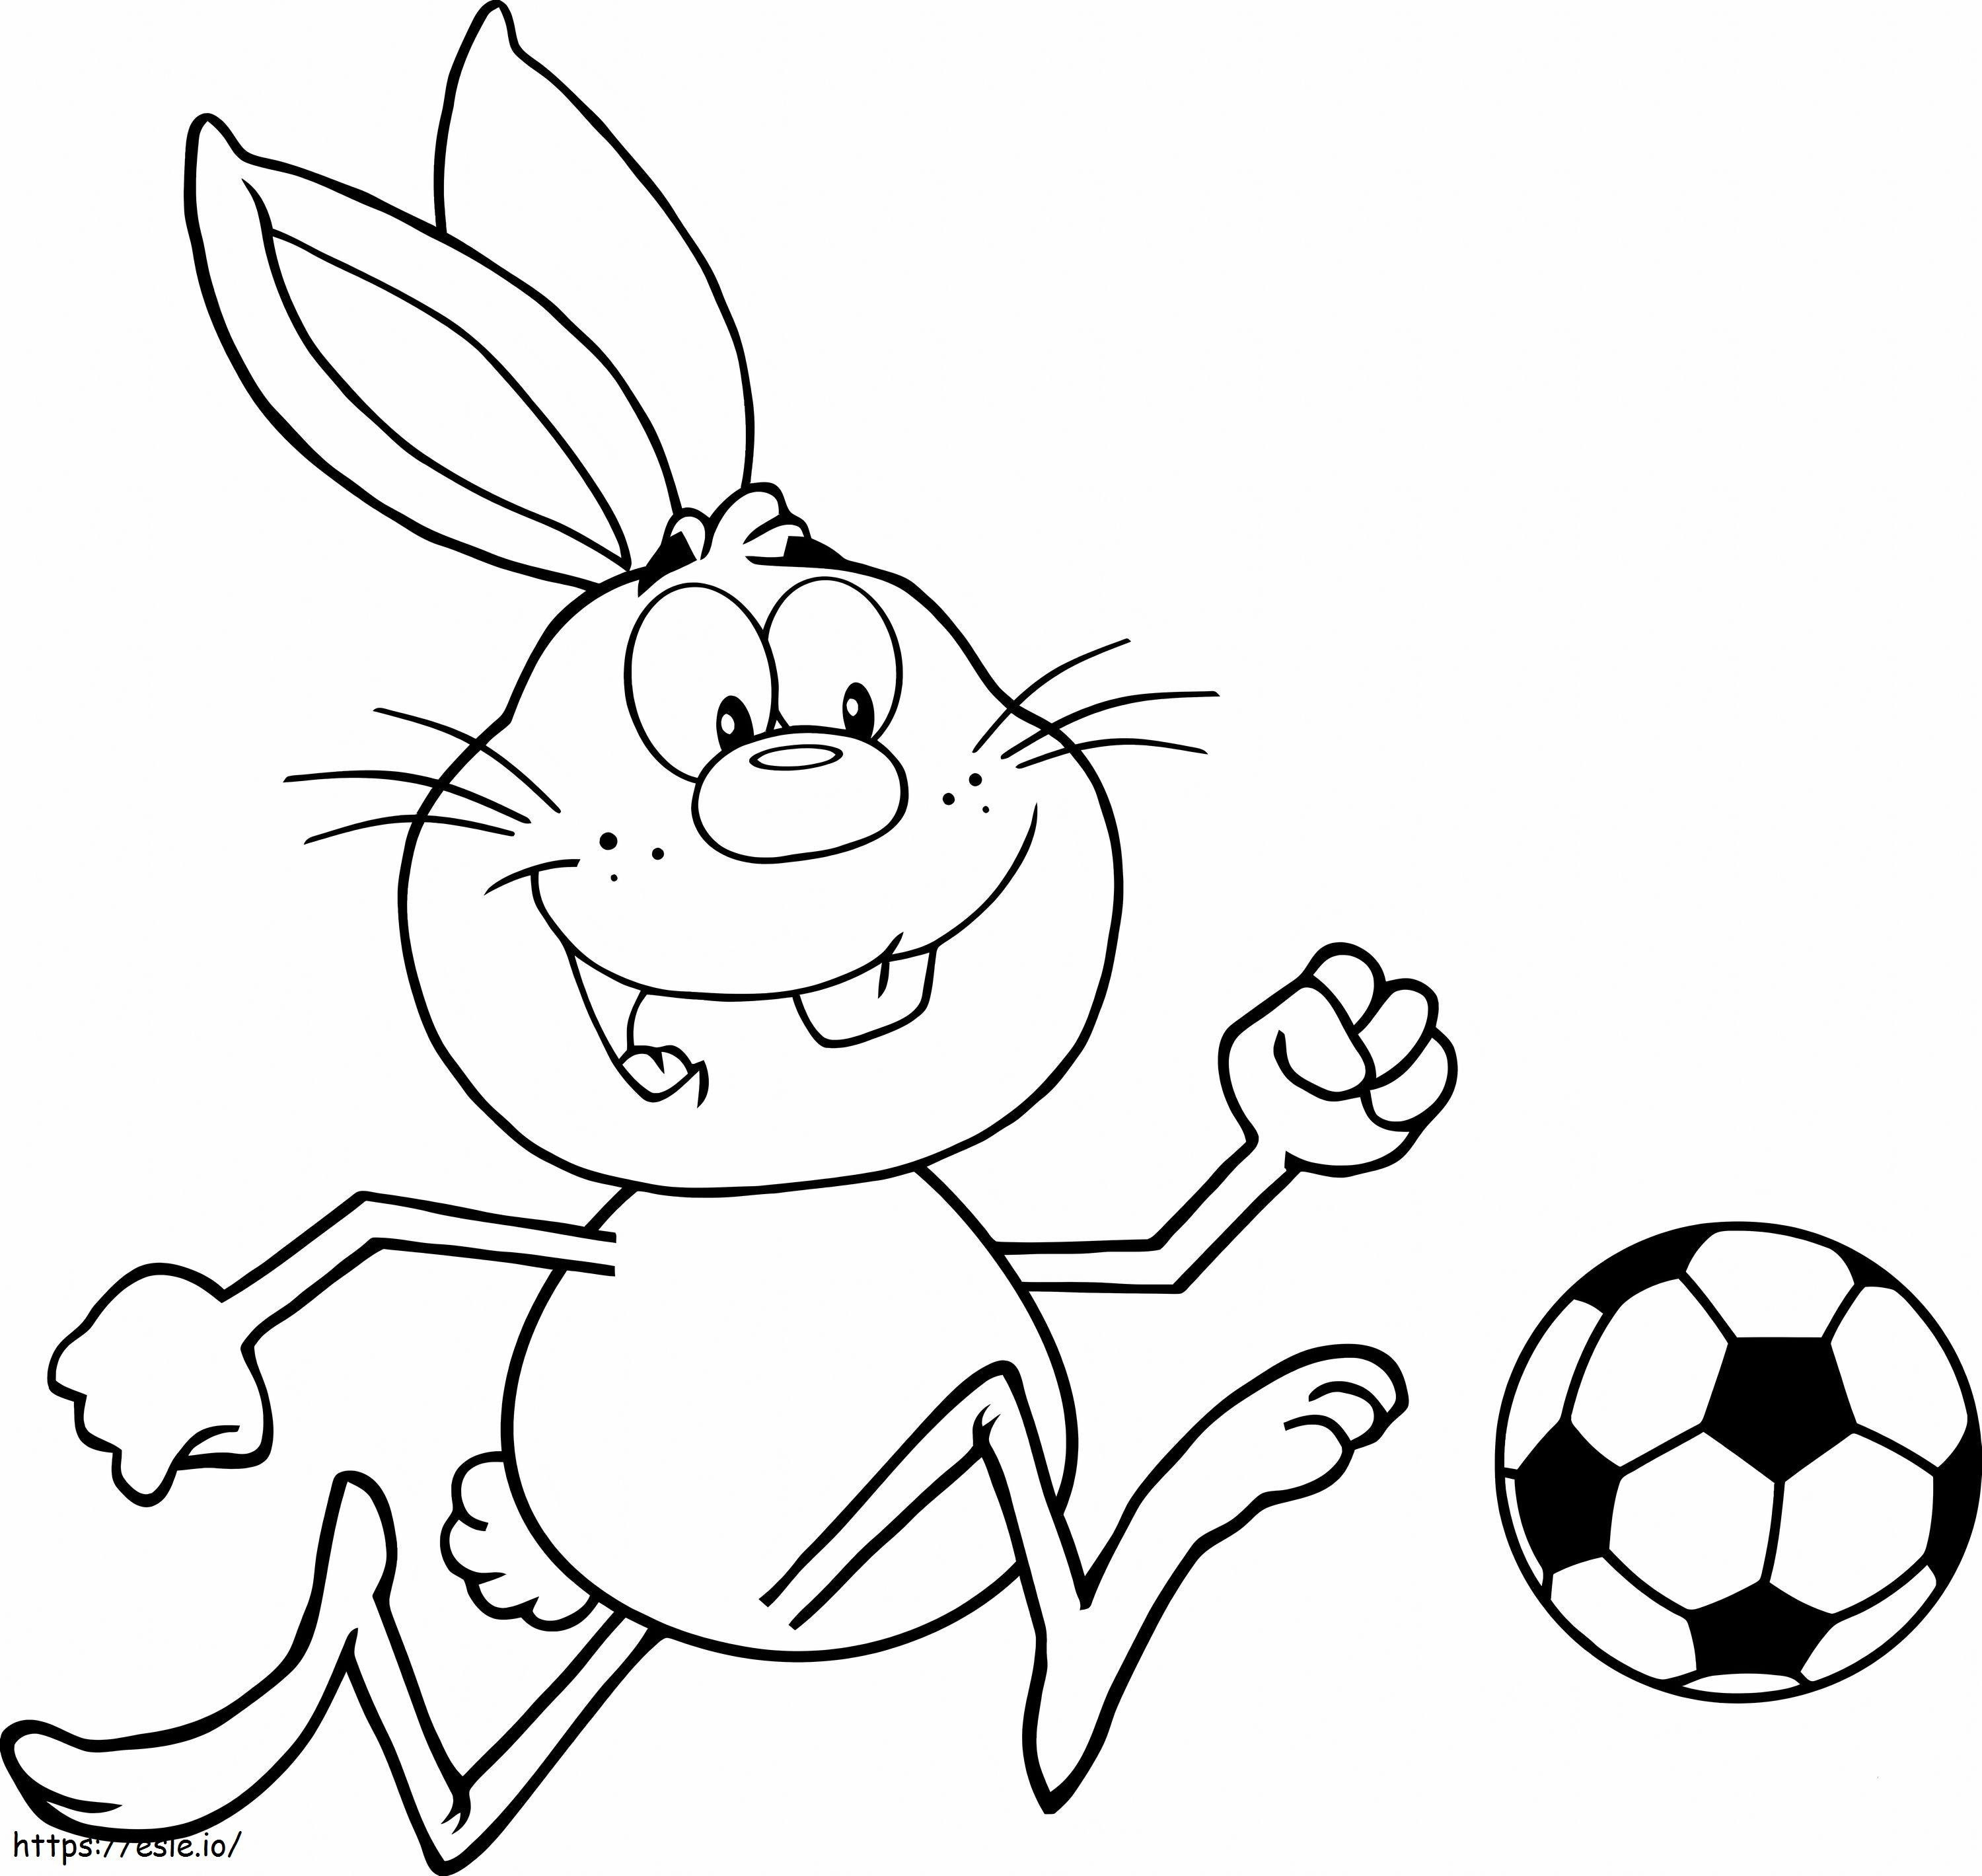 Kaninchen spielt Fußball ausmalbilder